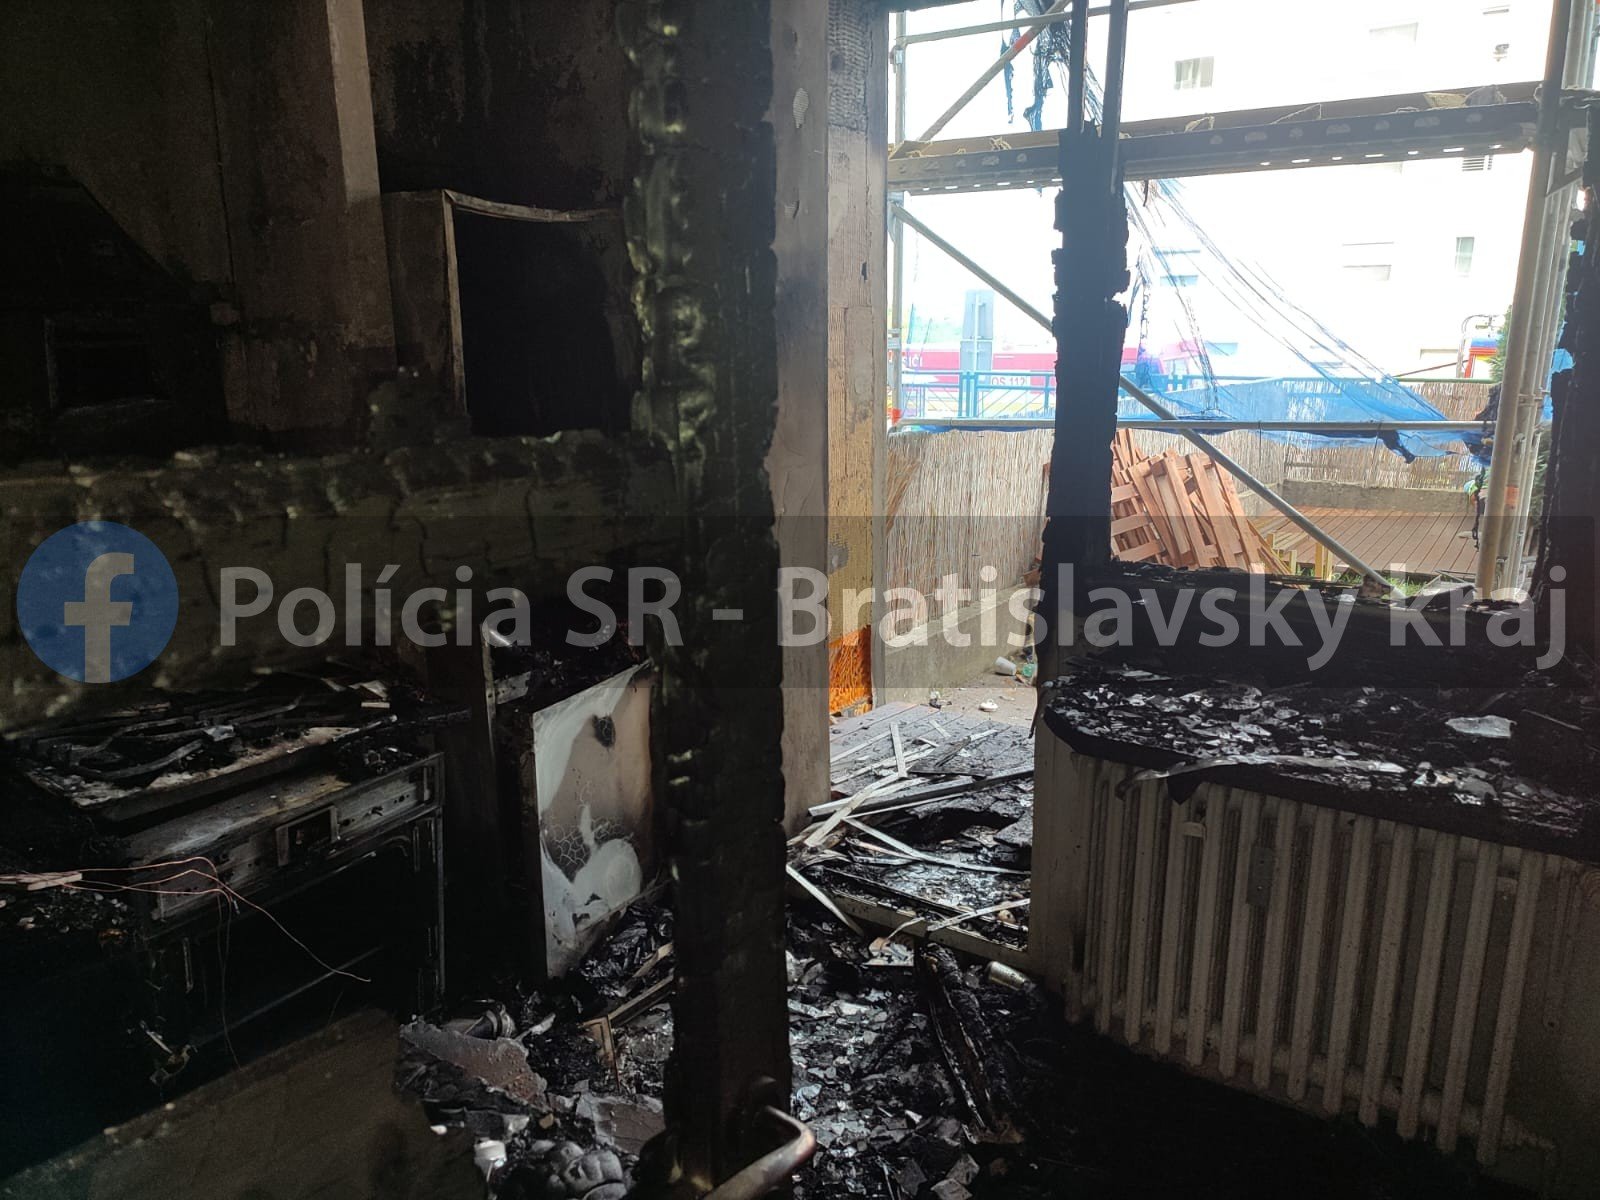 Kigyulladt egy lakás, az ablakon keresztül menekült meg a lángok elől